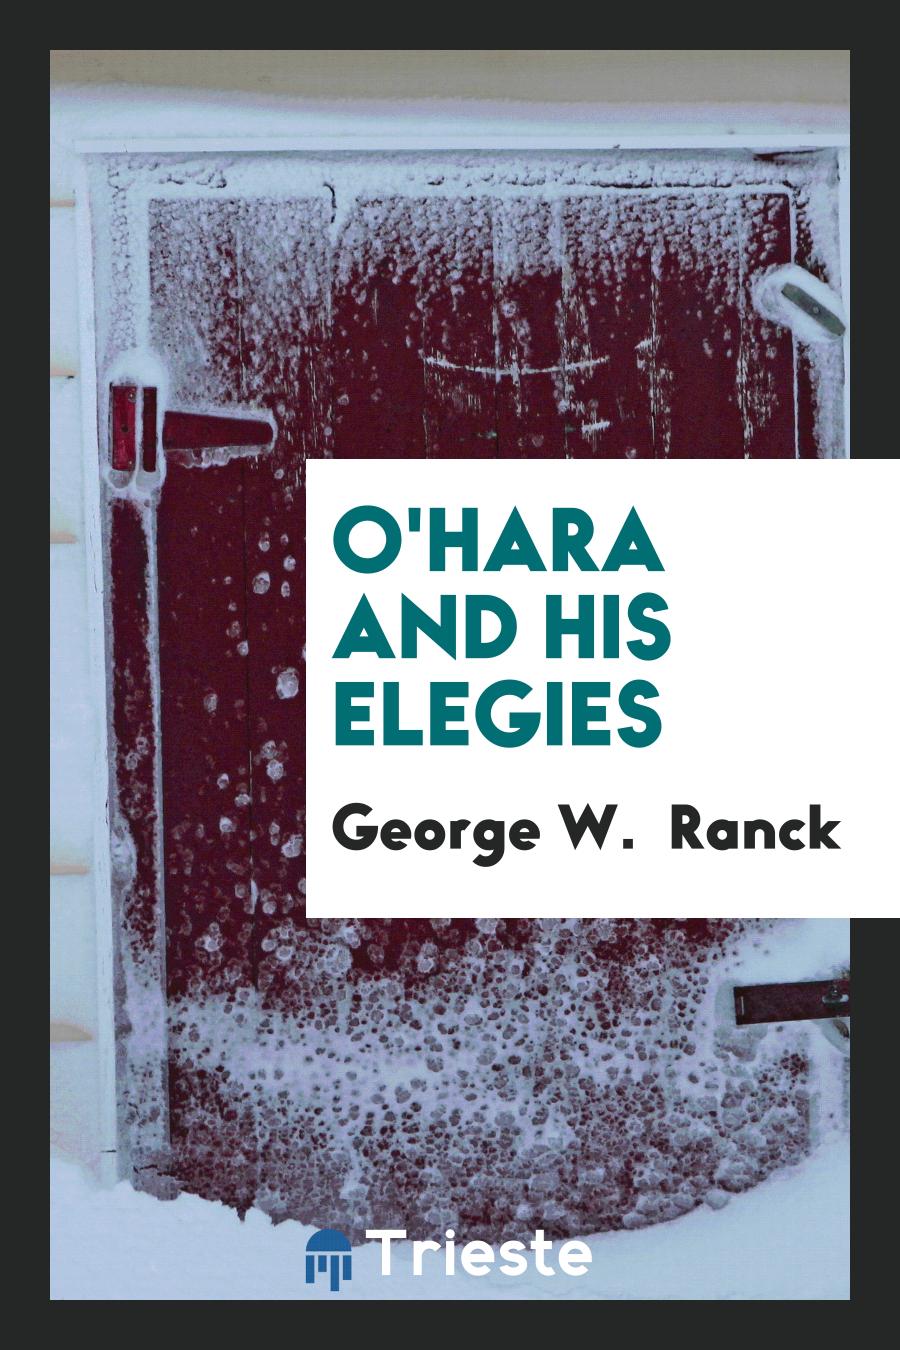 O'Hara and his elegies